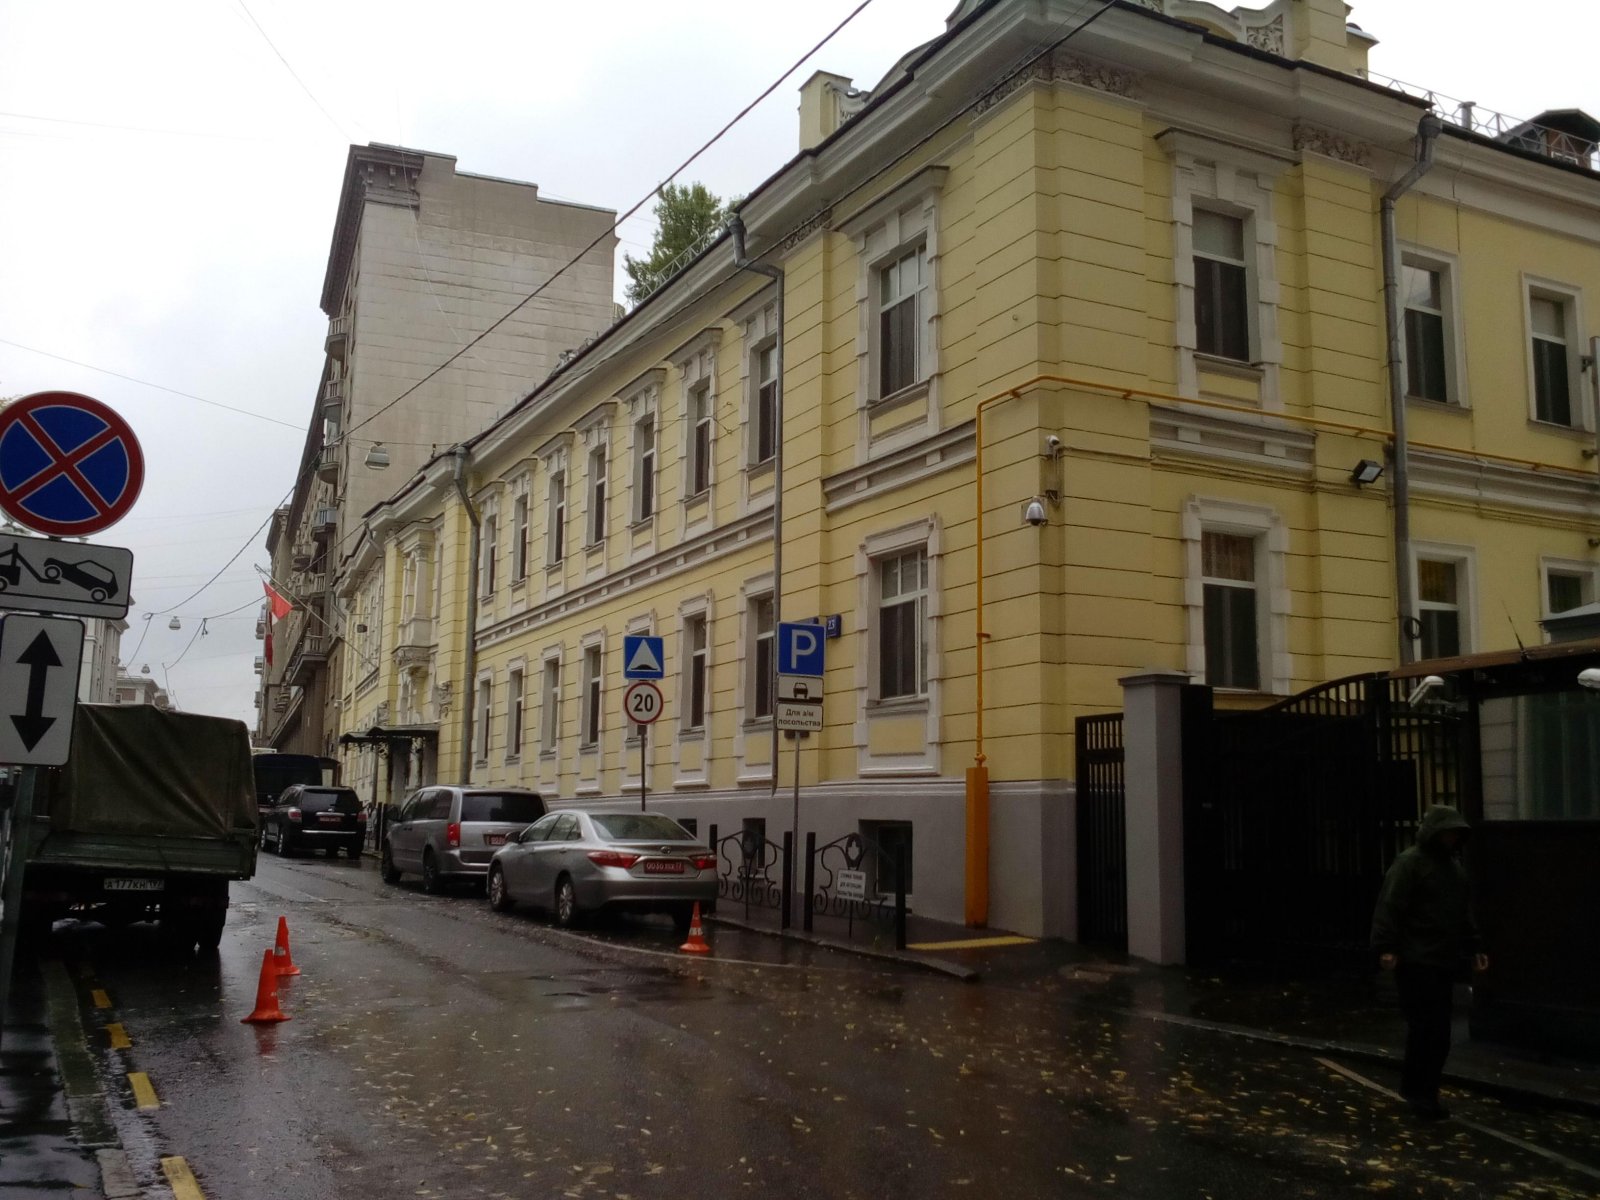 Посольство Канады в РФ, Староконюшенный переулок, 23